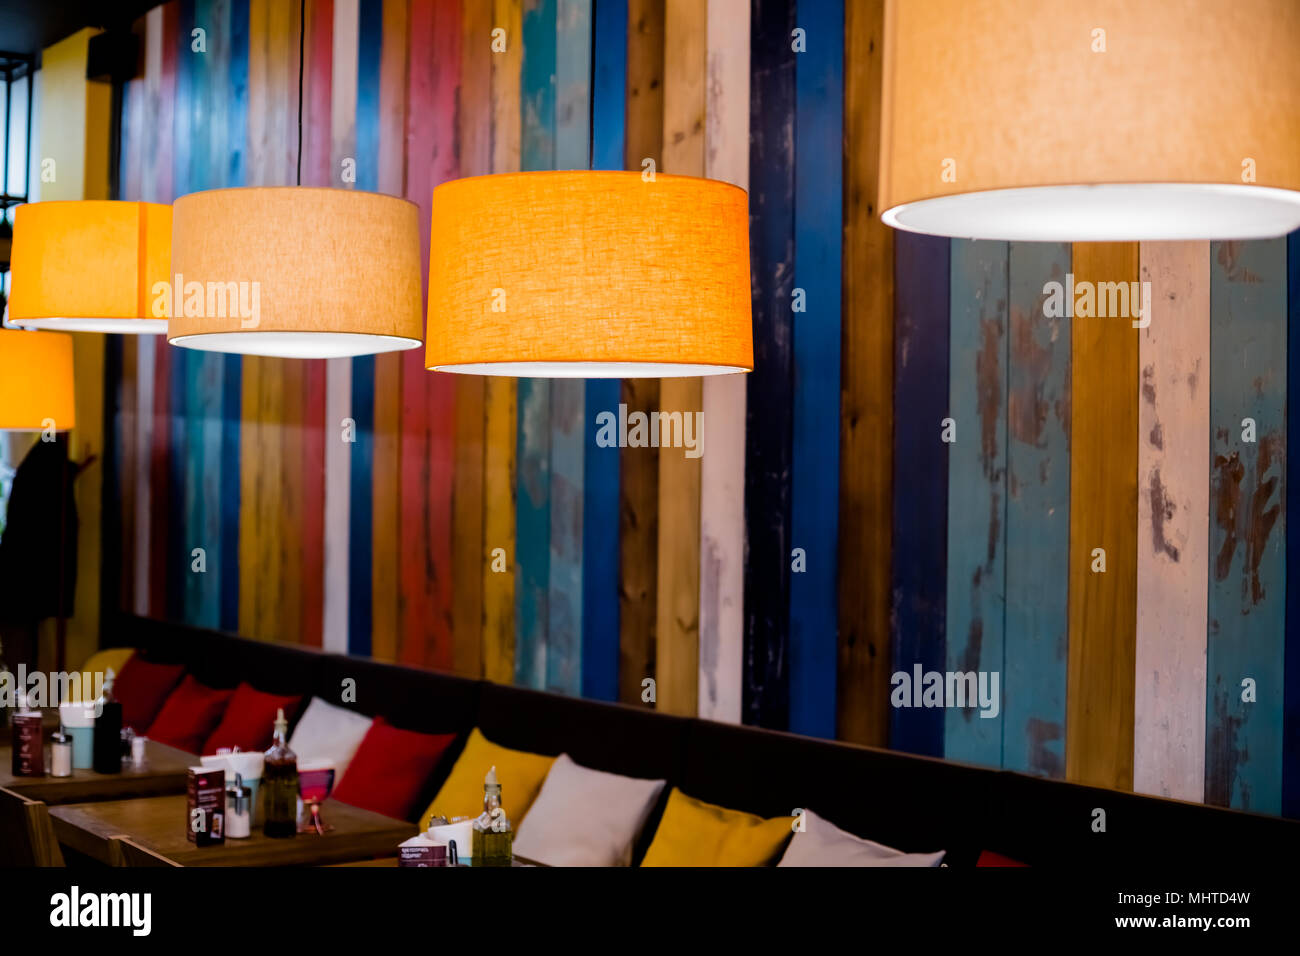 https://c8.alamy.com/compde/mhtd4w/lampe-im-restaurant-orange-warmes-licht-vintage-innenbeleuchtung-lampe-fur-cafe-einrichtung-details-im-innenraum-mhtd4w.jpg